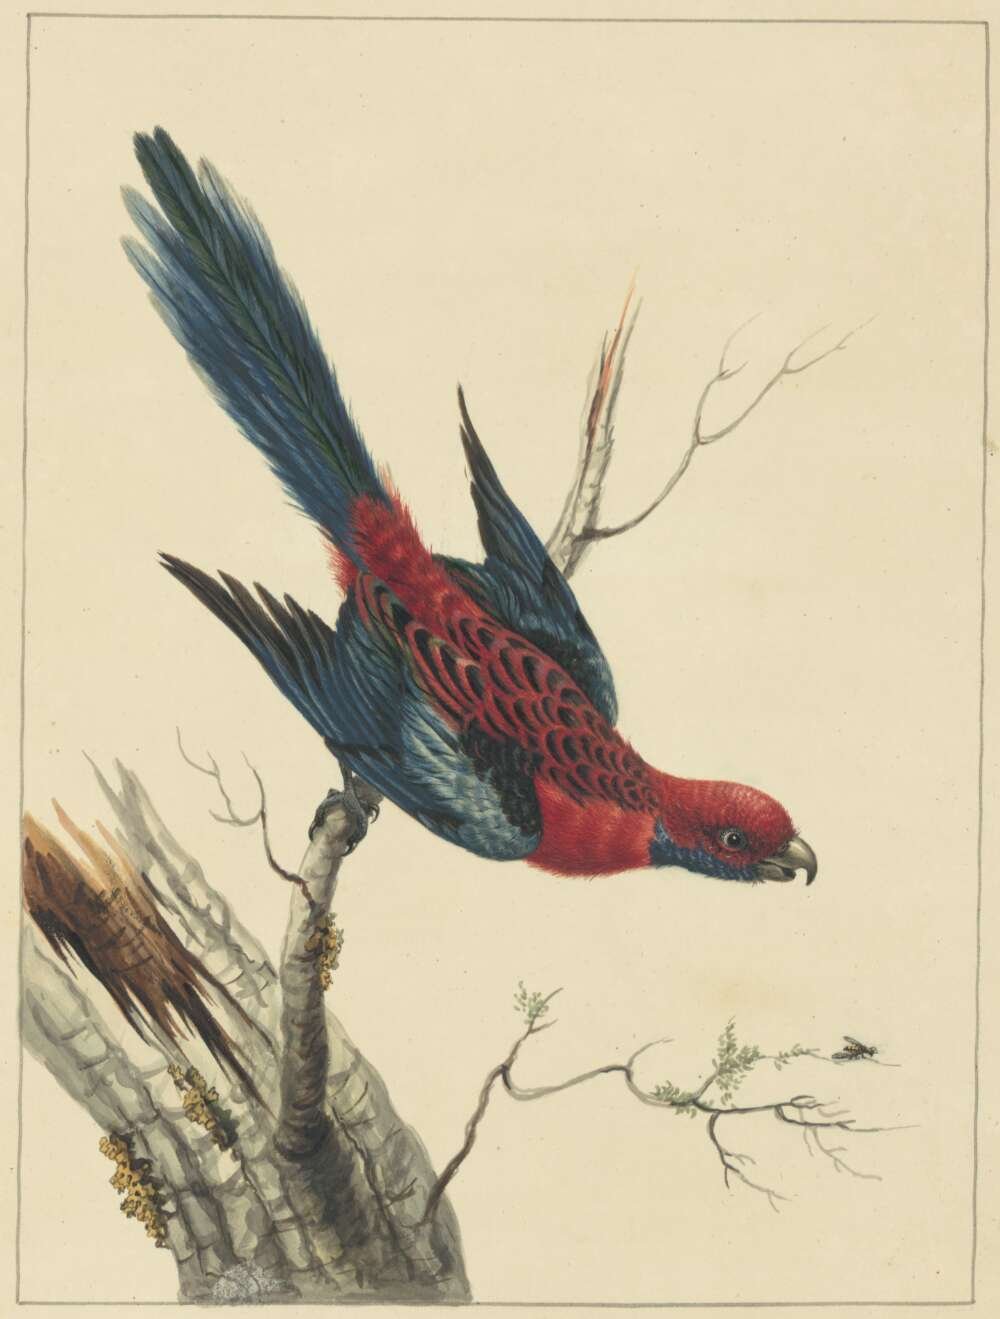 Sarah Stone, Pennantian Parrot, [1790]